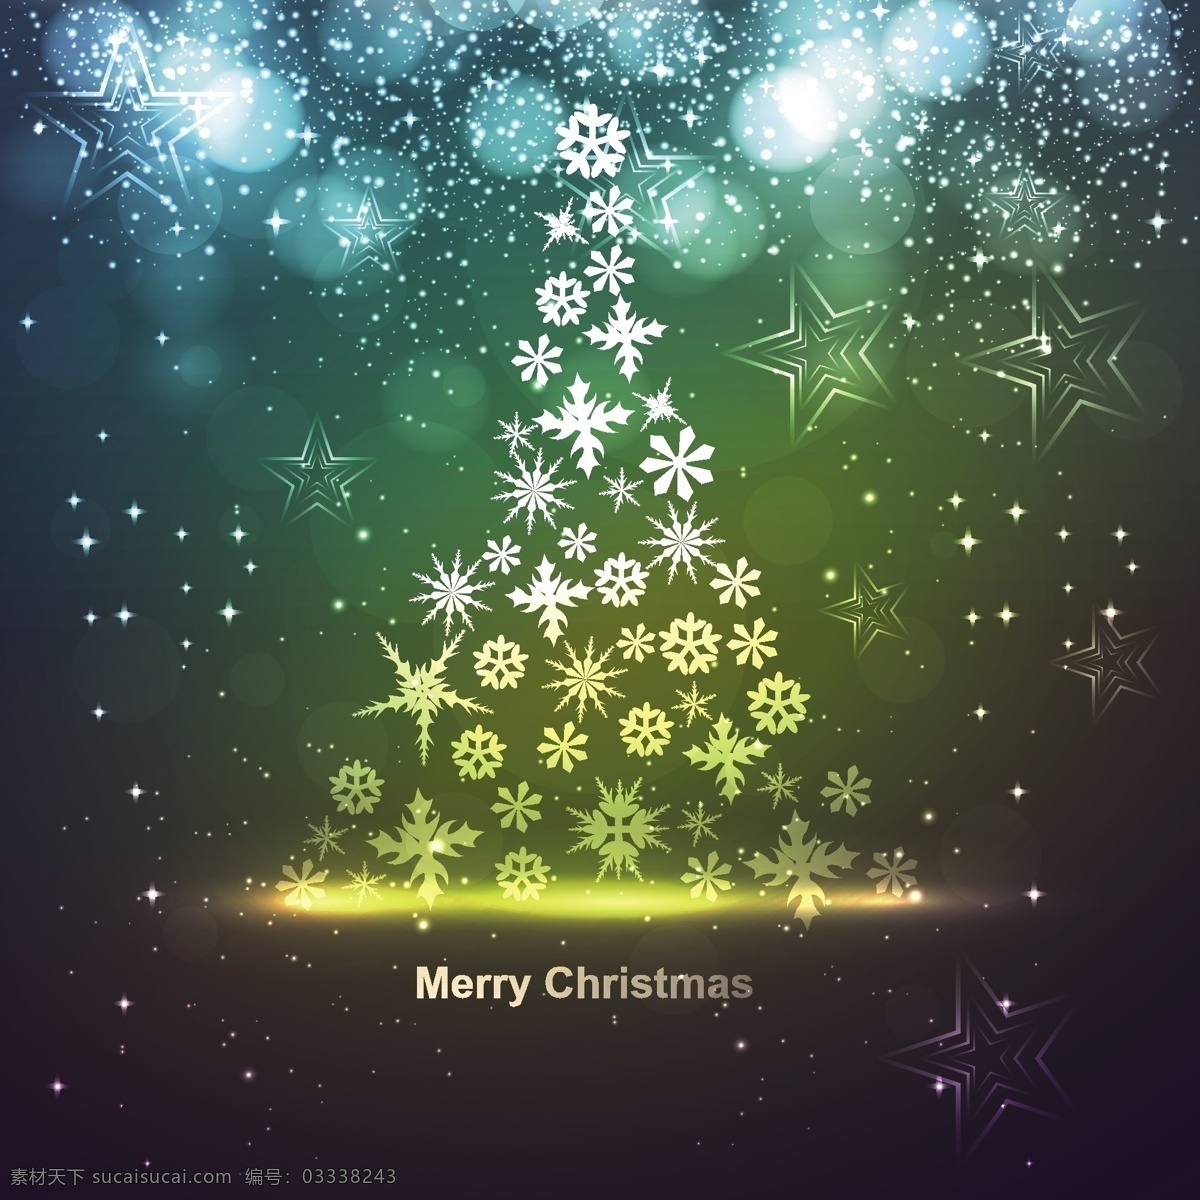 雪花 发光 圣诞卡 背景 圣诞节 抽象 卡 模板 雪 圣诞快乐 圣诞树 圣诞星星 壁纸 圣诞 事件 节日 丰富多彩的 丰富多彩 问候 黑色